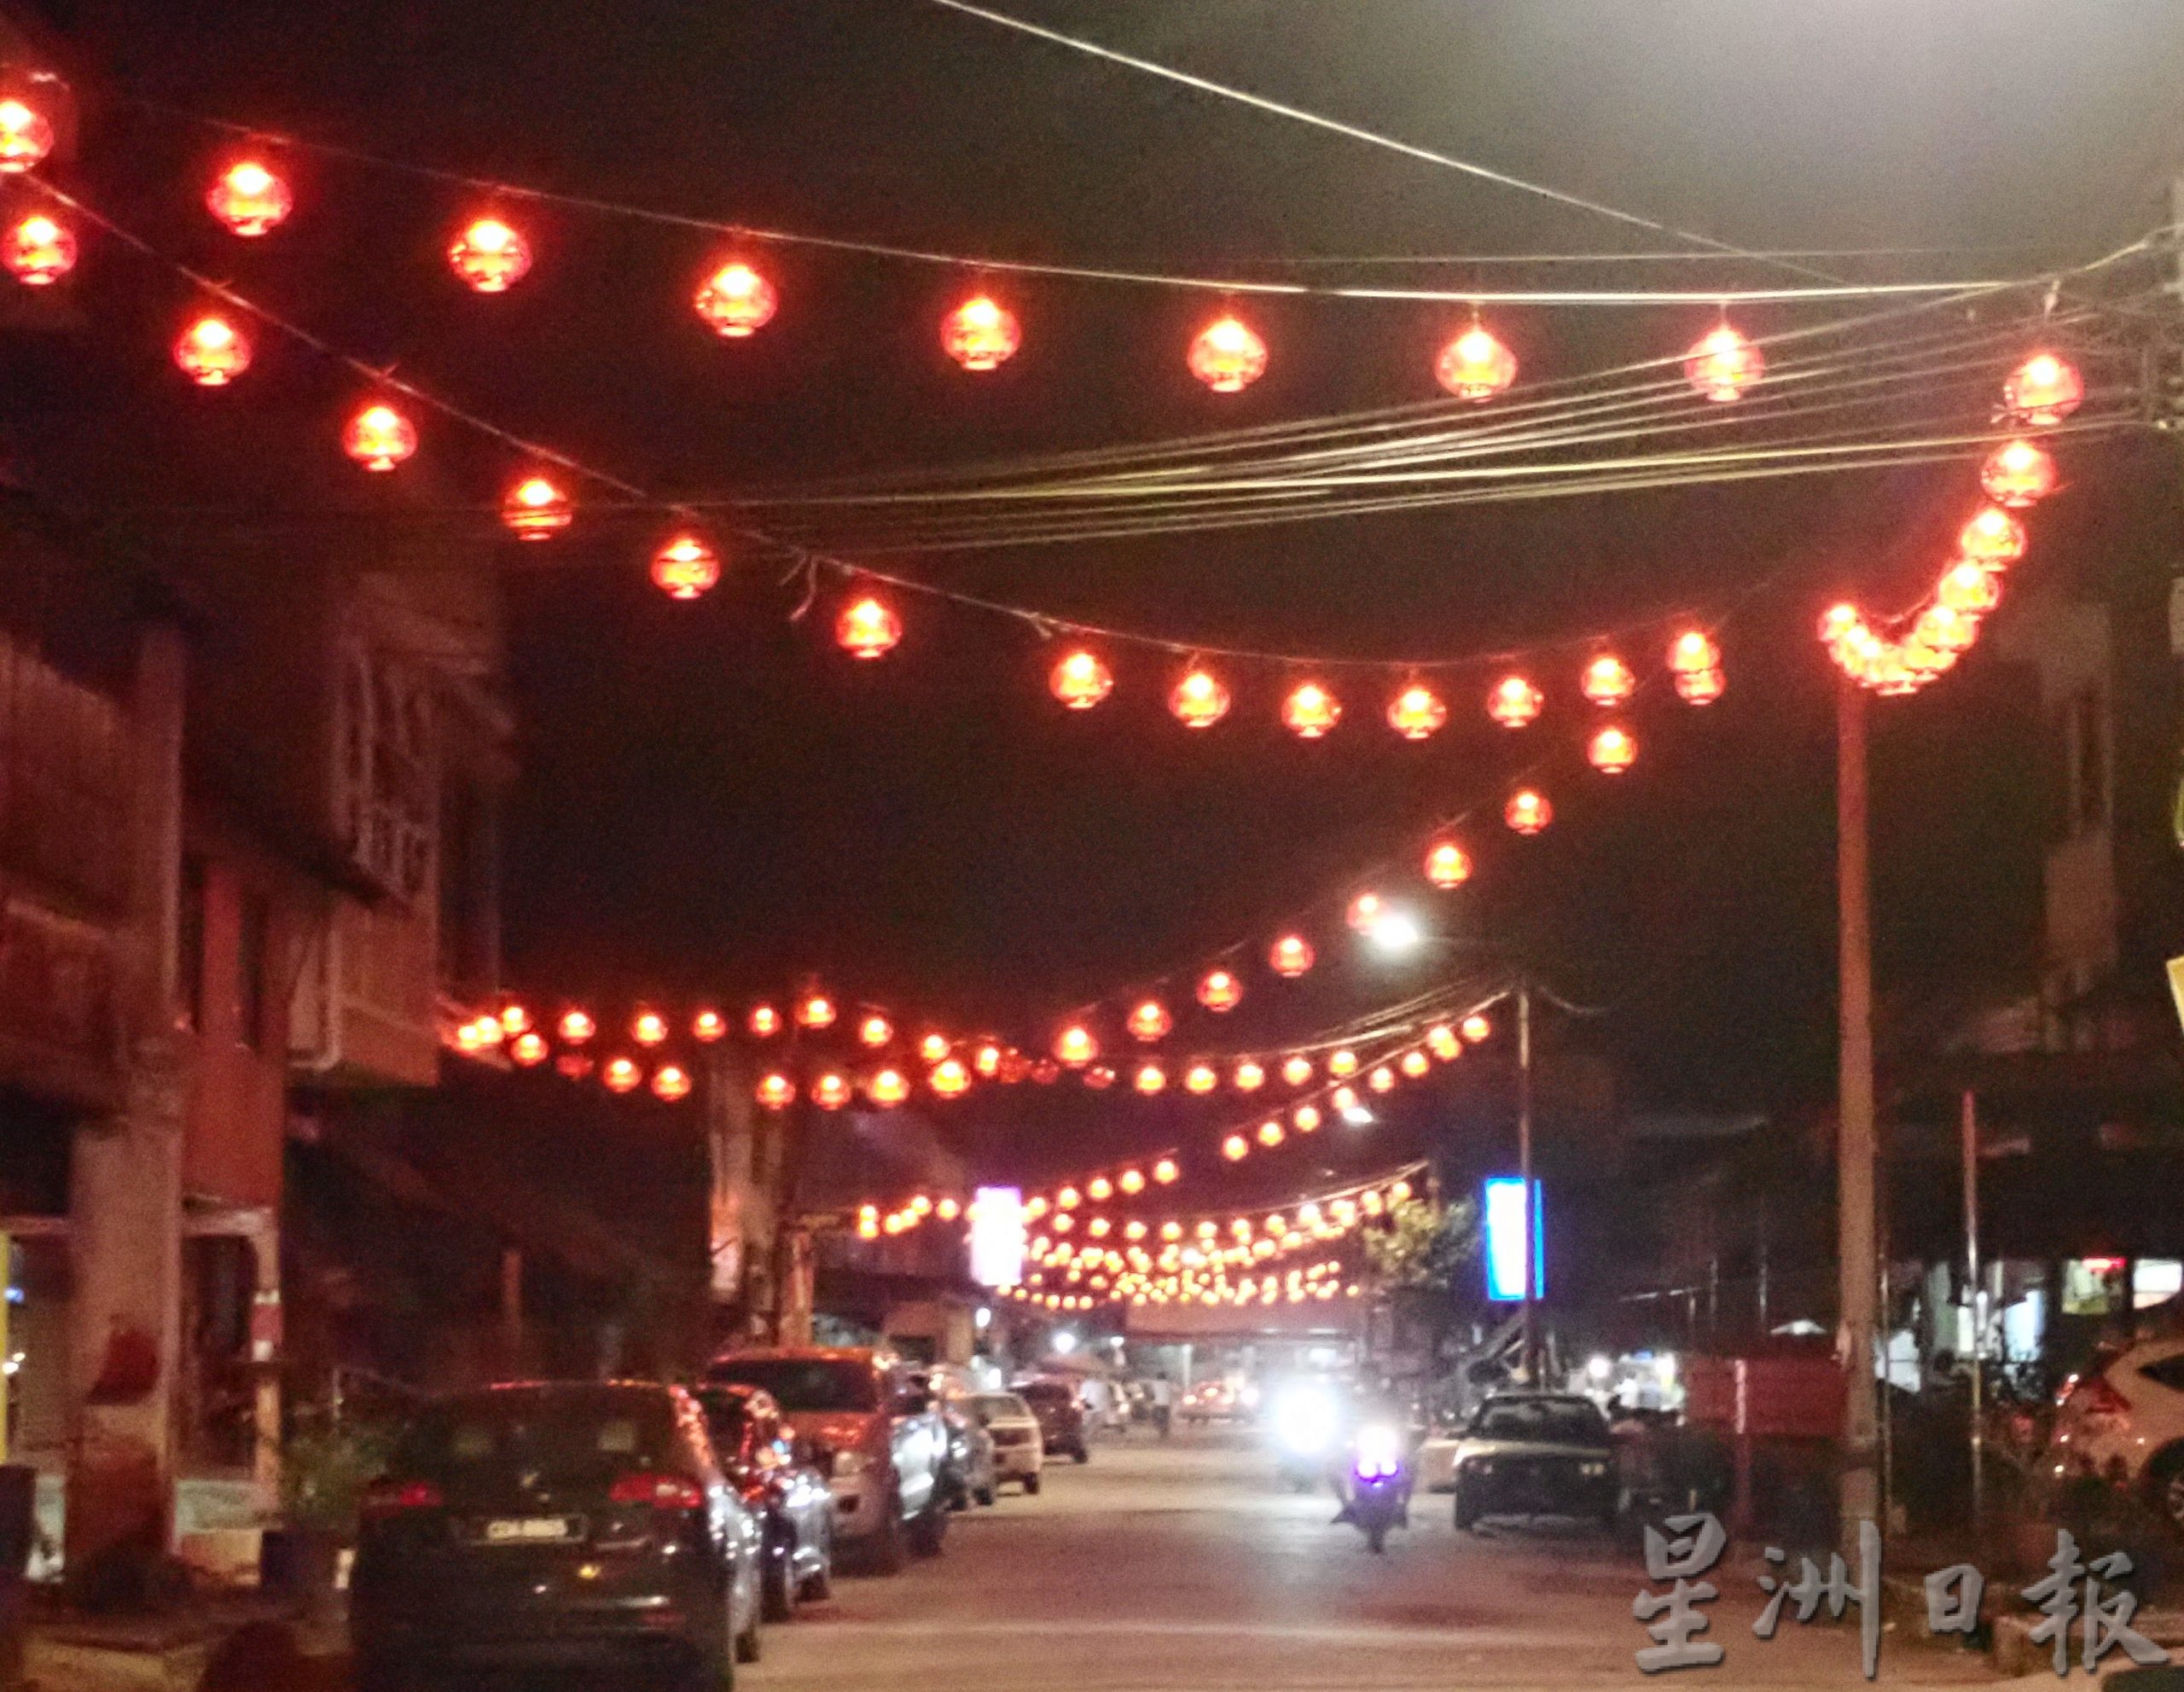 社区动态／高挂千个红灯笼 十八丁峇登春意洋溢 